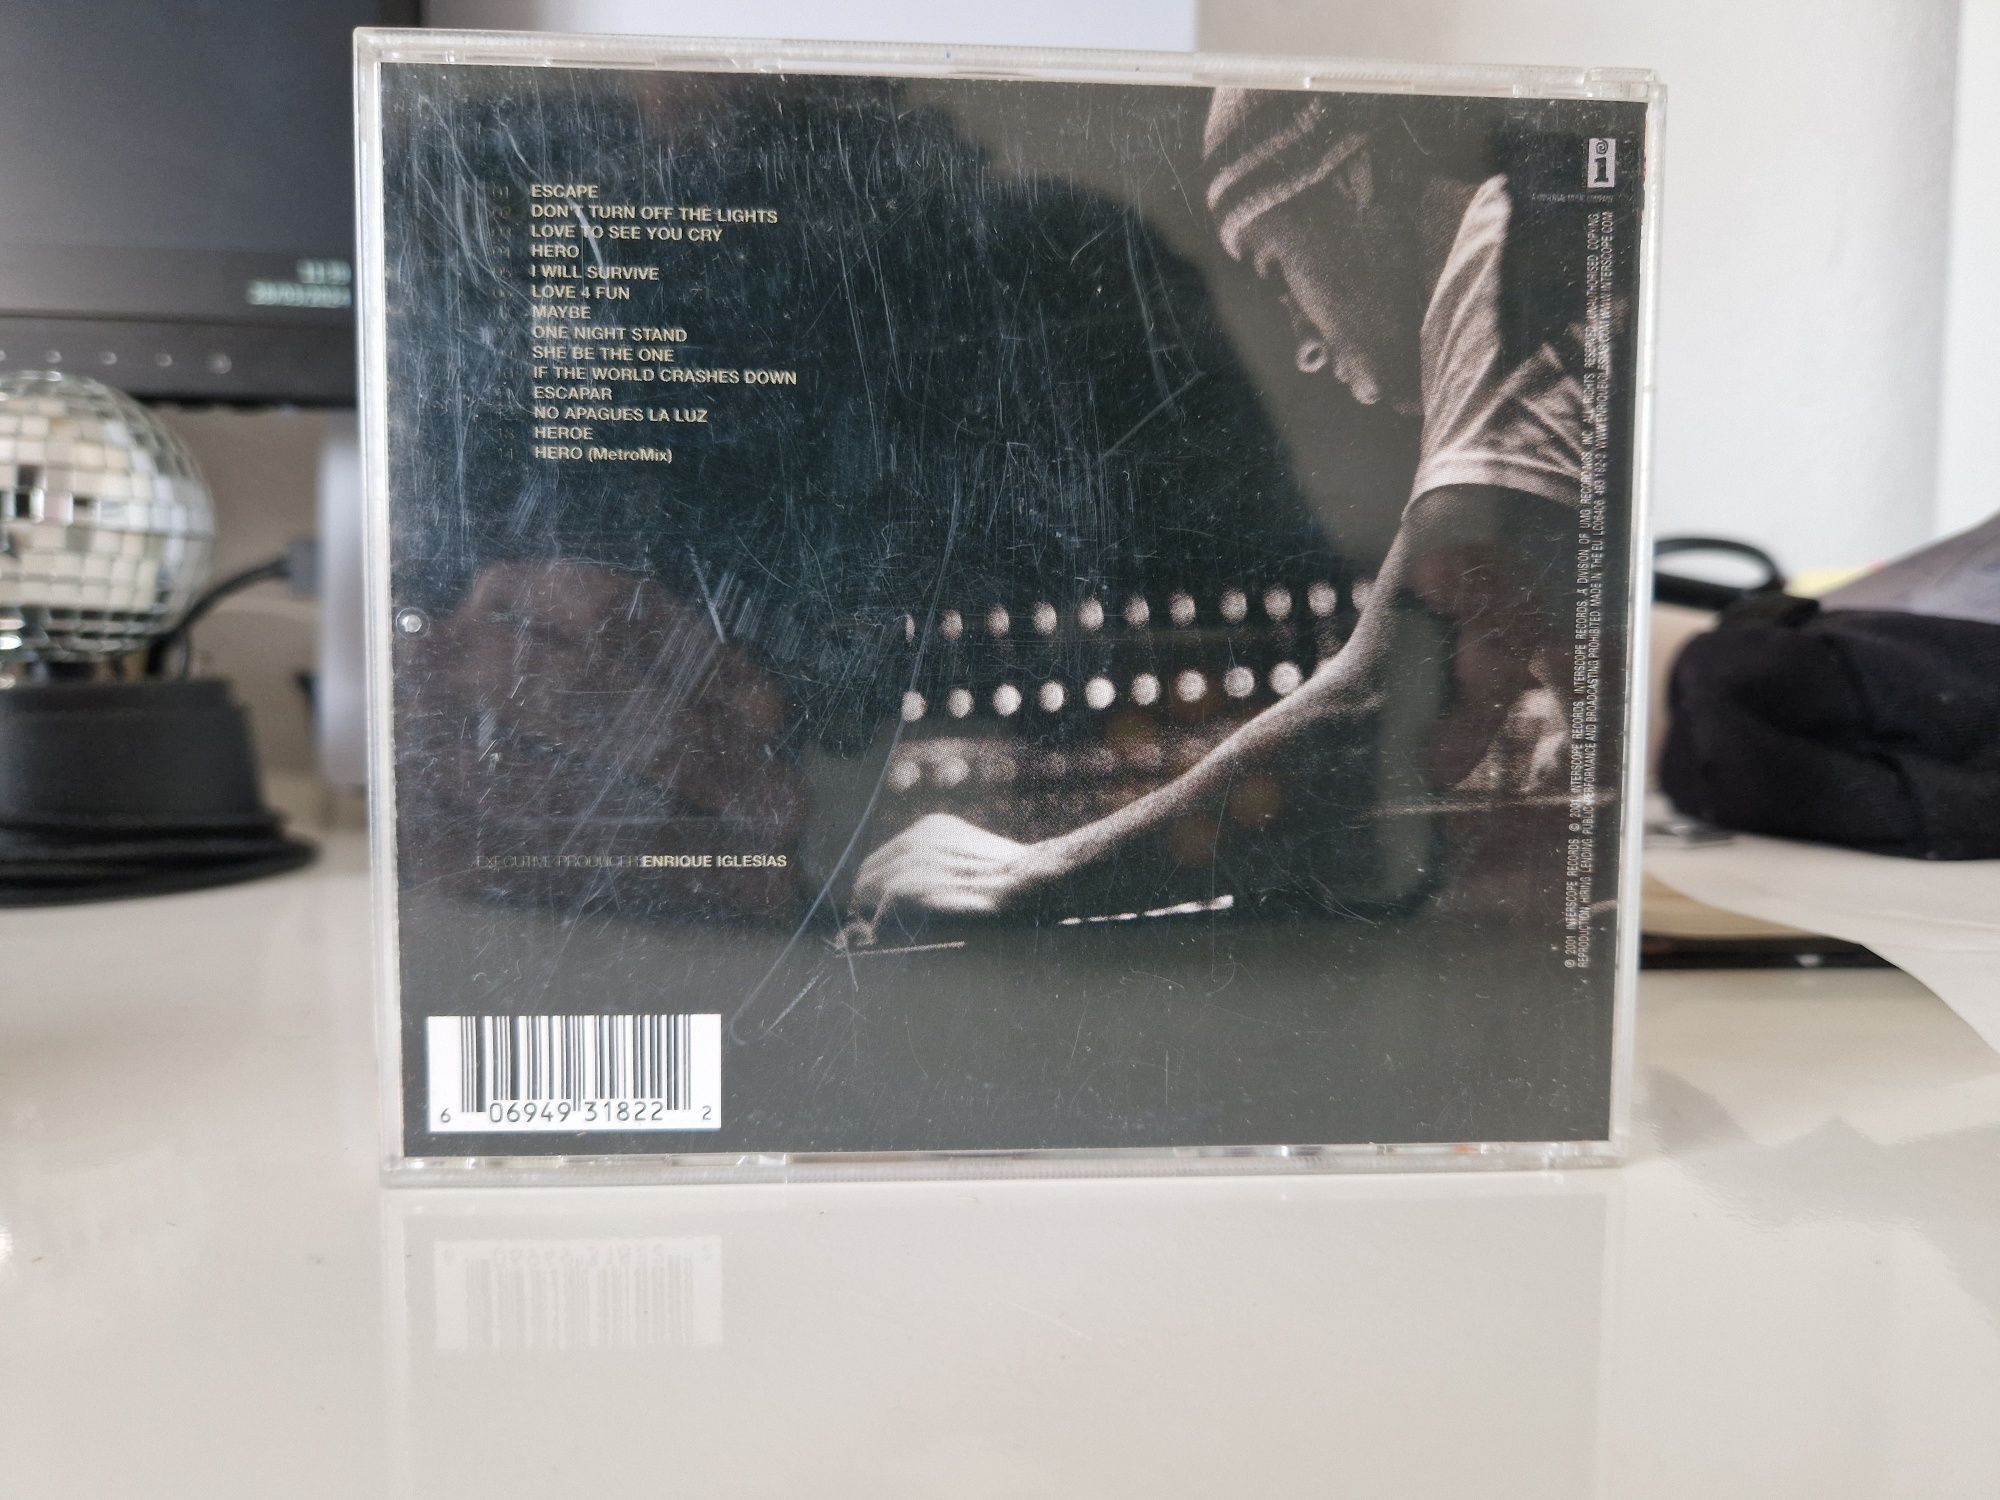 Enrique Iglesias - Escape CD